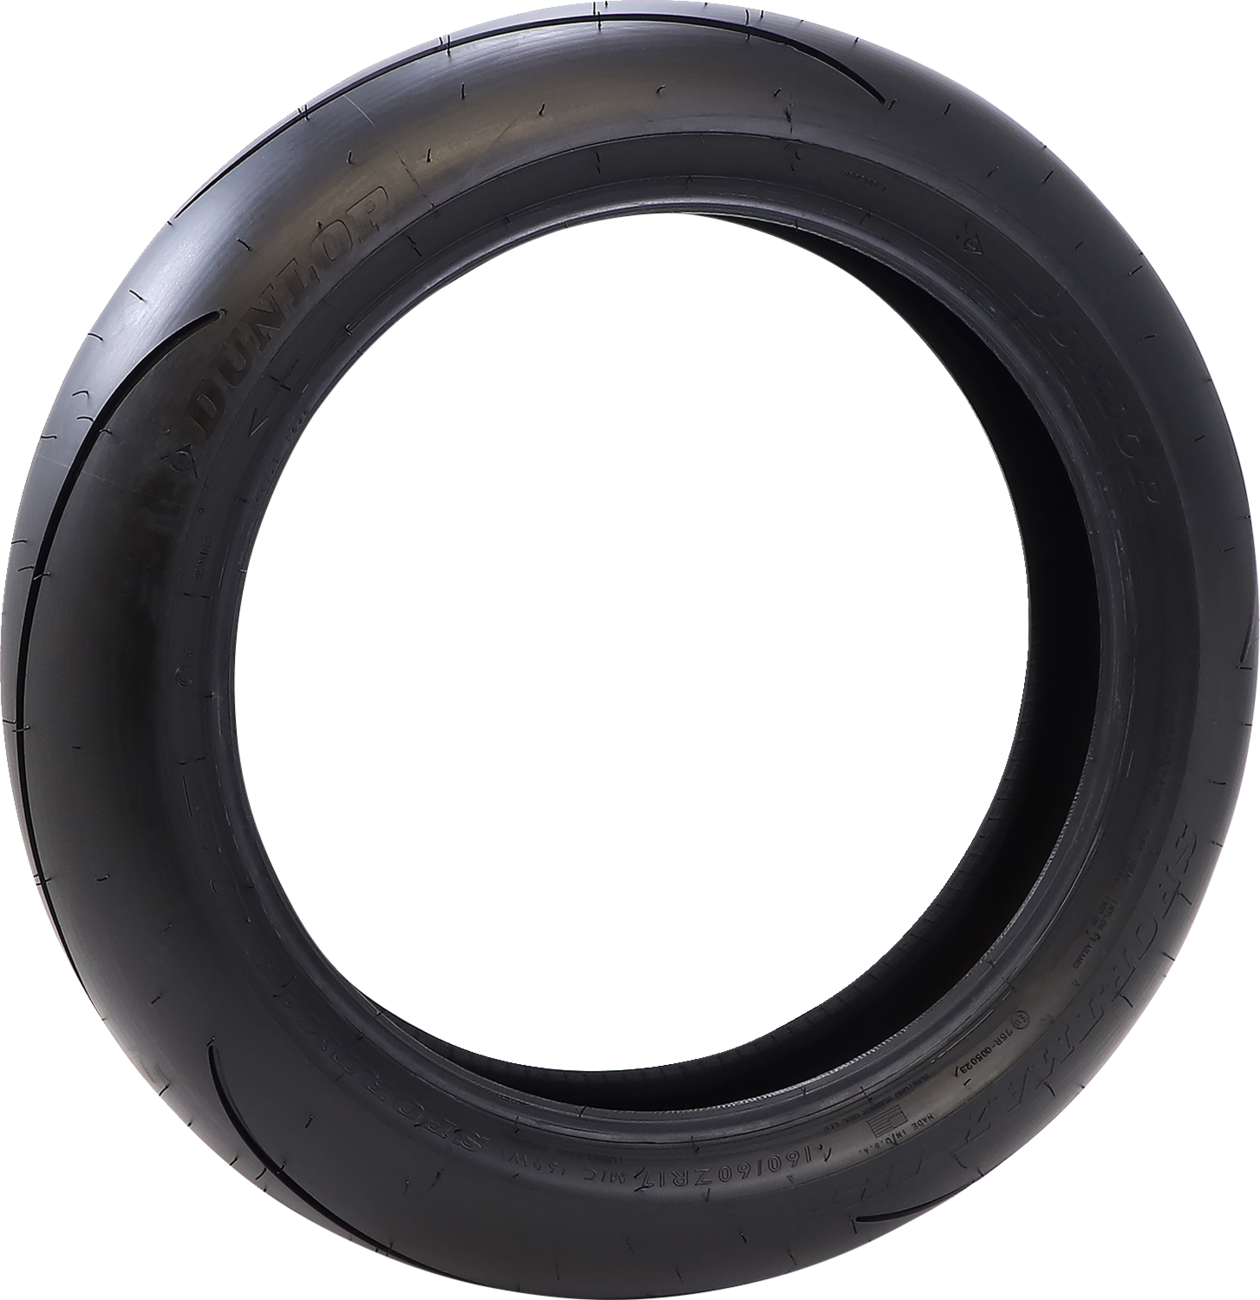 DUNLOP Tire - Sportmax® Q5 - Rear - 200/60ZR17 - (80W) 45247190